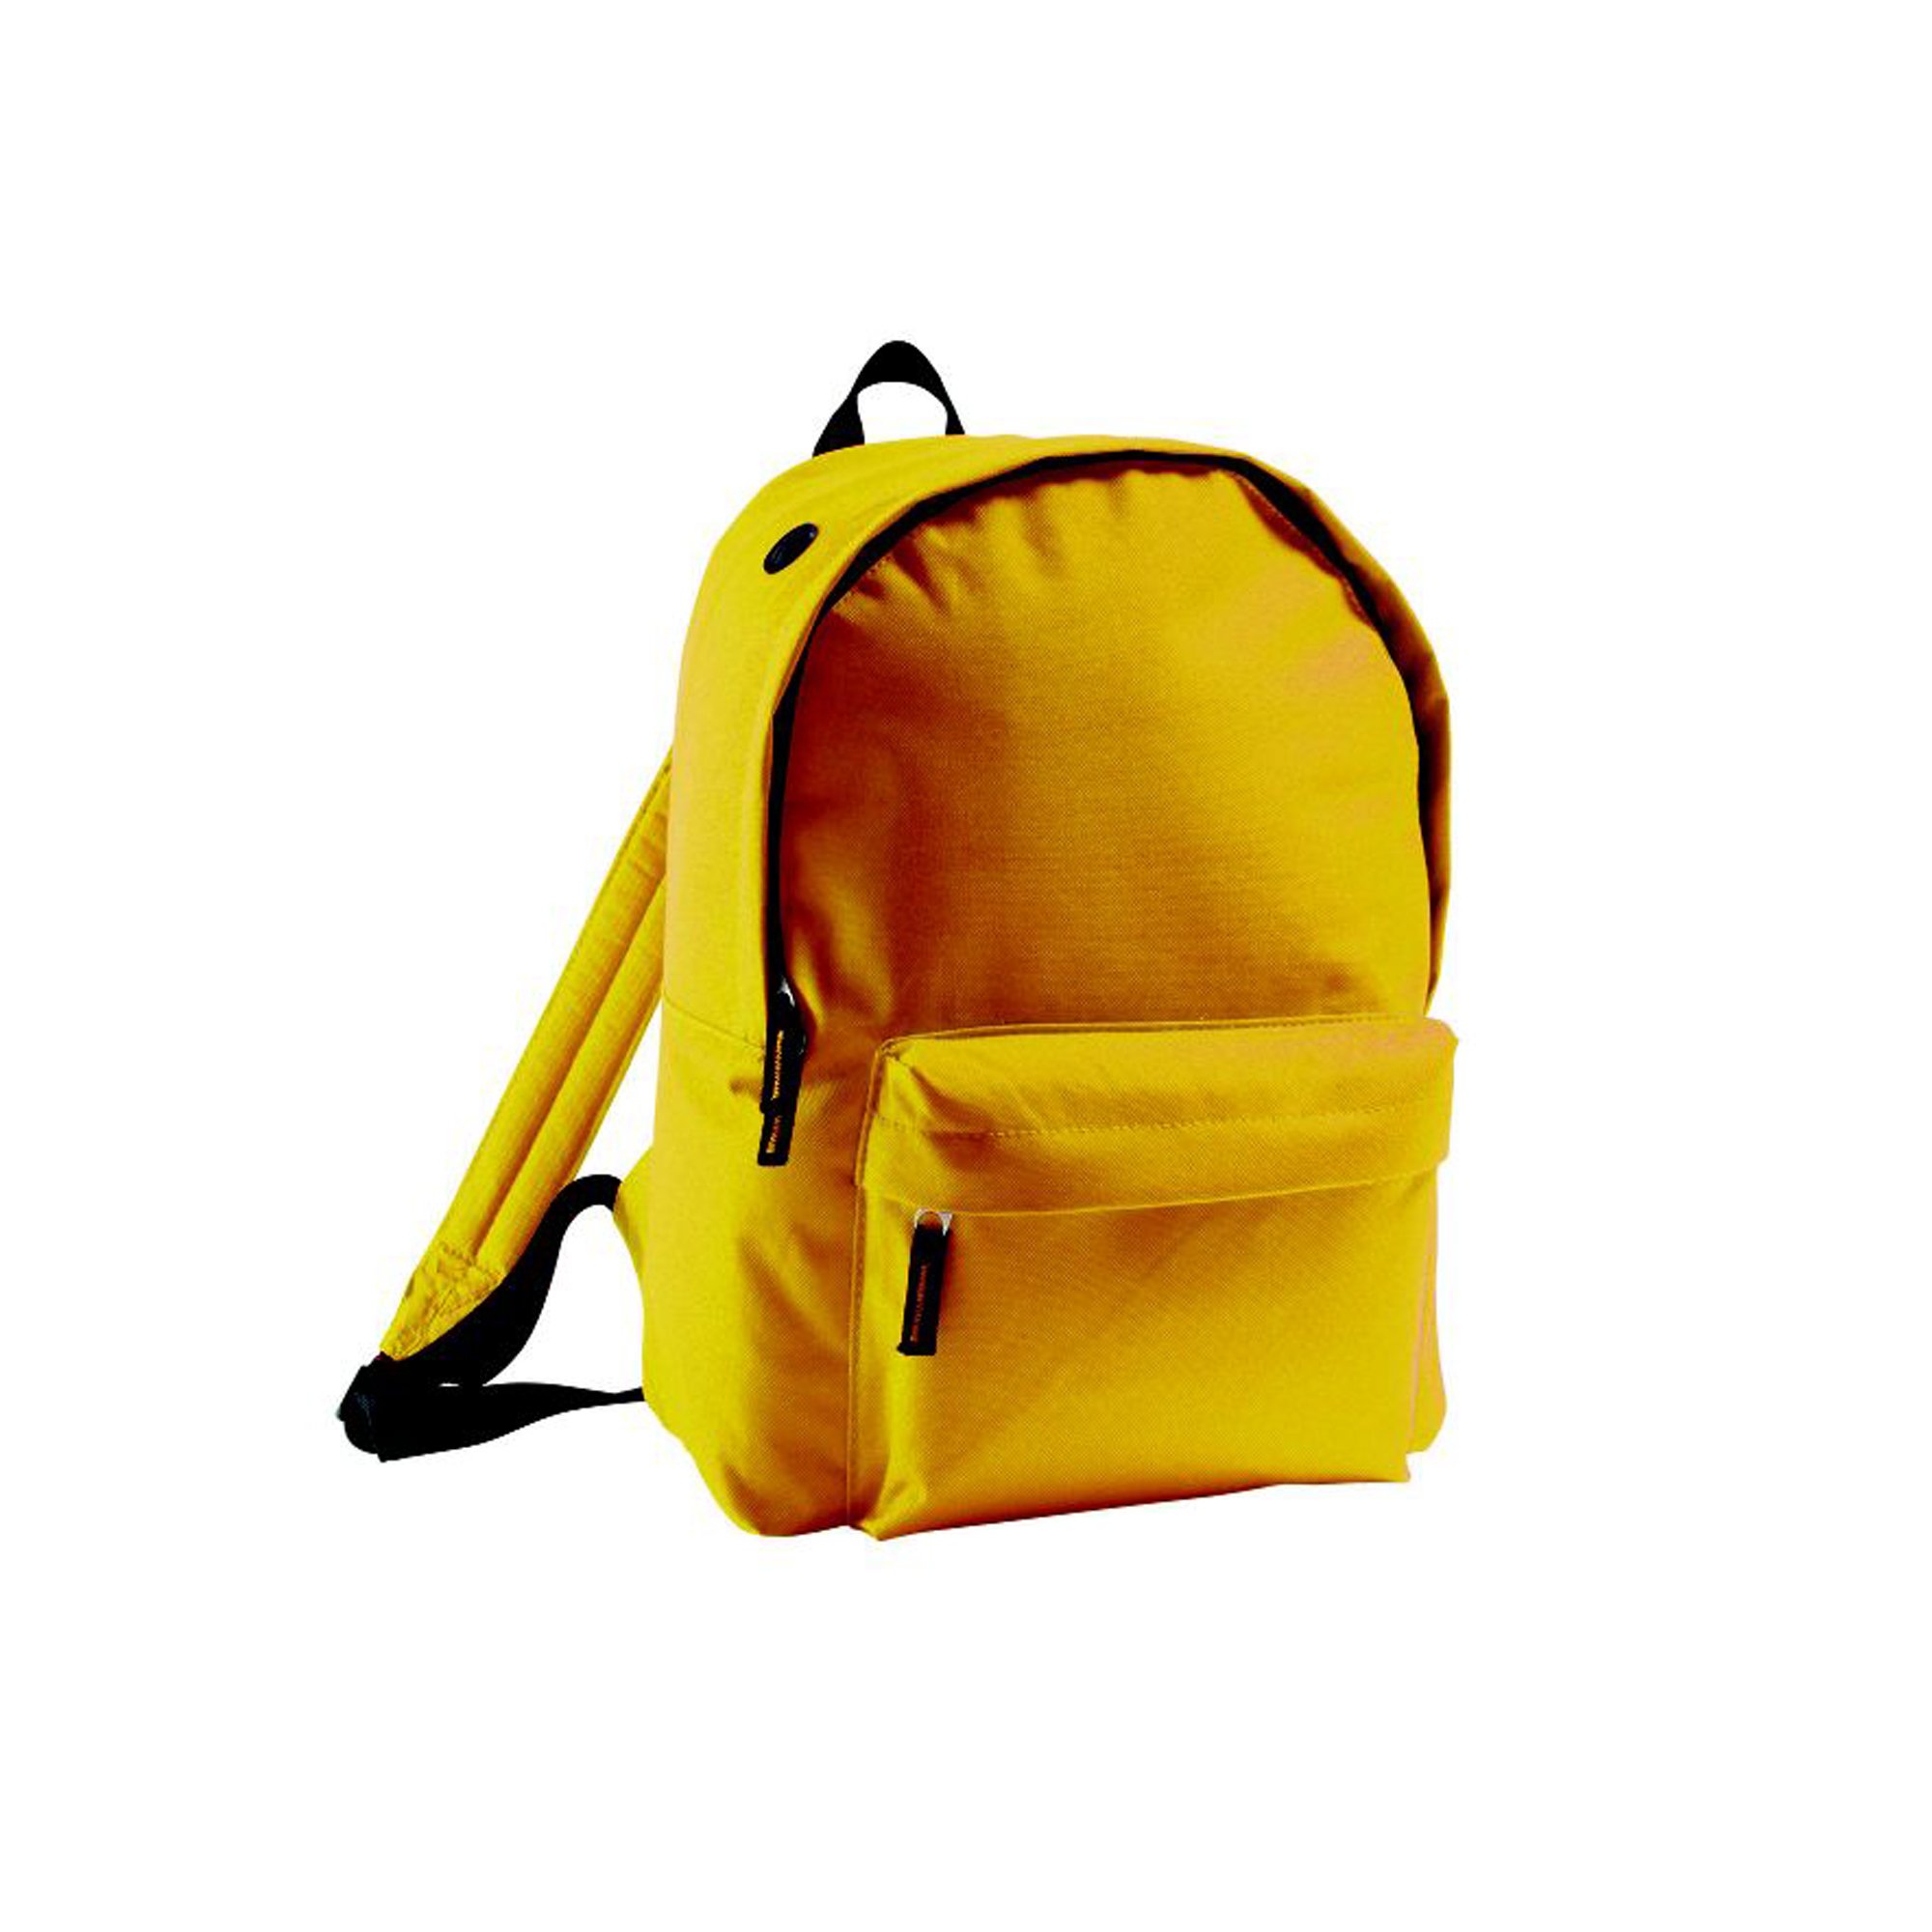 SOLS Rider Backpack/Rucksack Bag (ONE) (Gold)